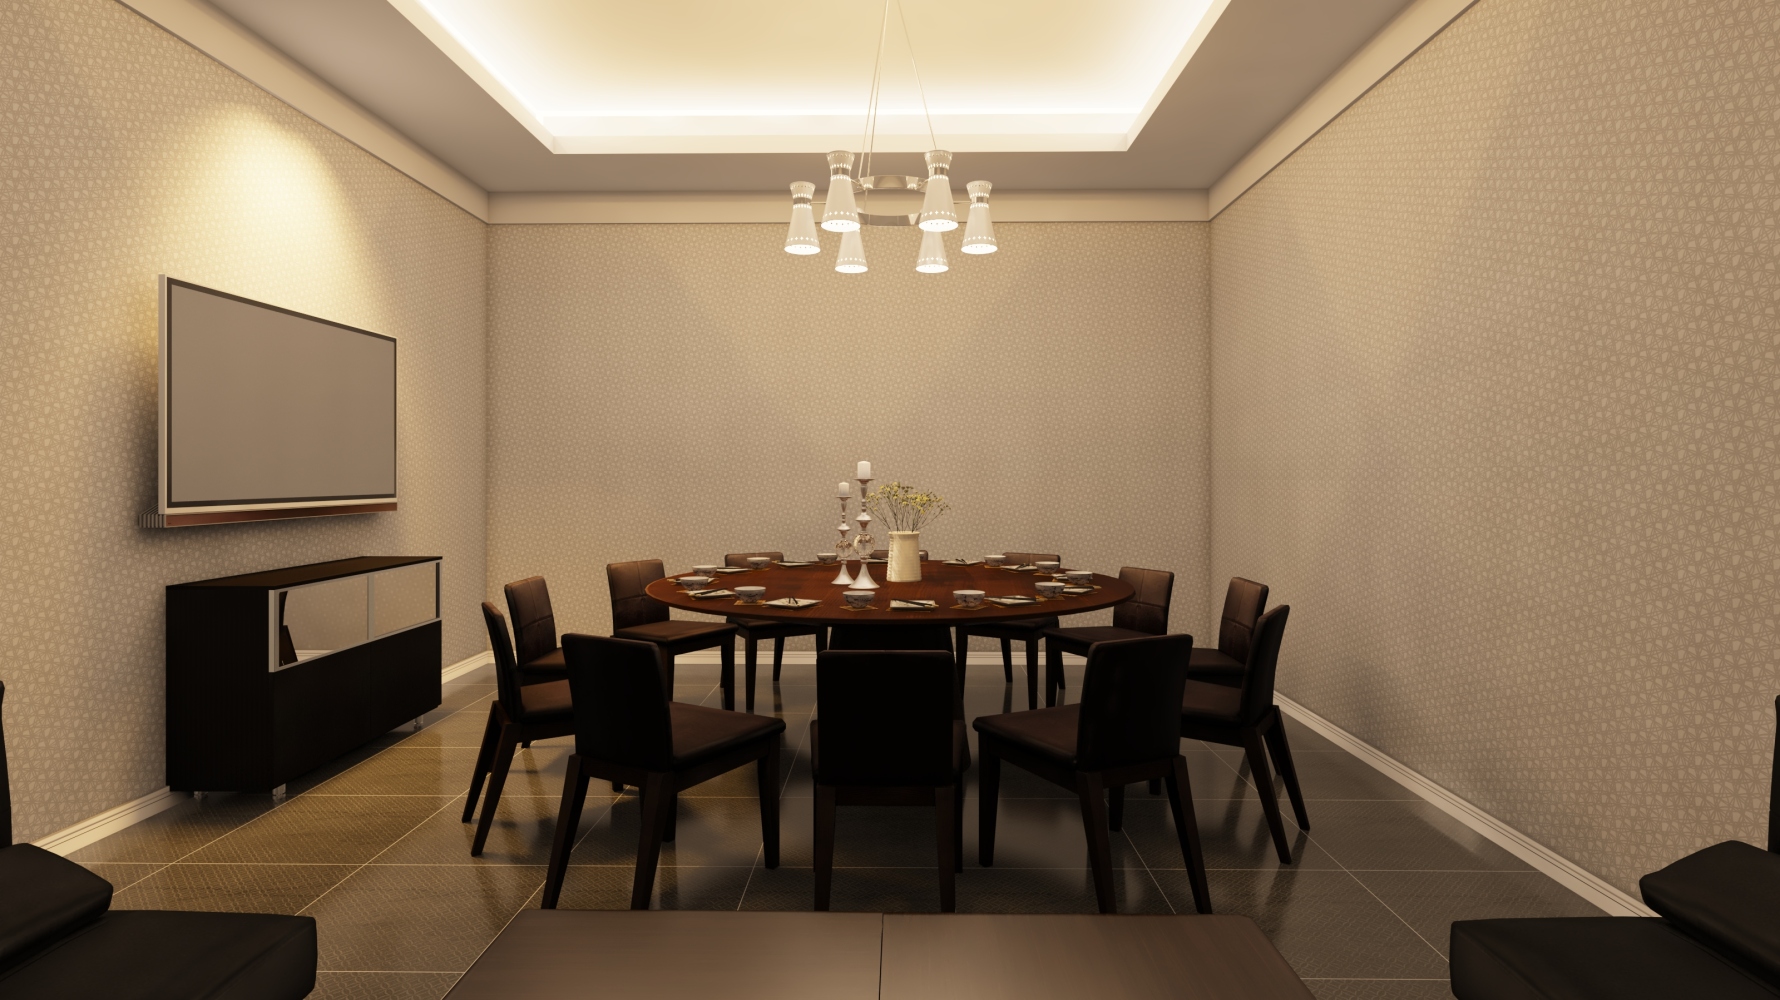 星南方餐厅包厢 现代风格一室装修效果图 刘京晶设计效果图 每